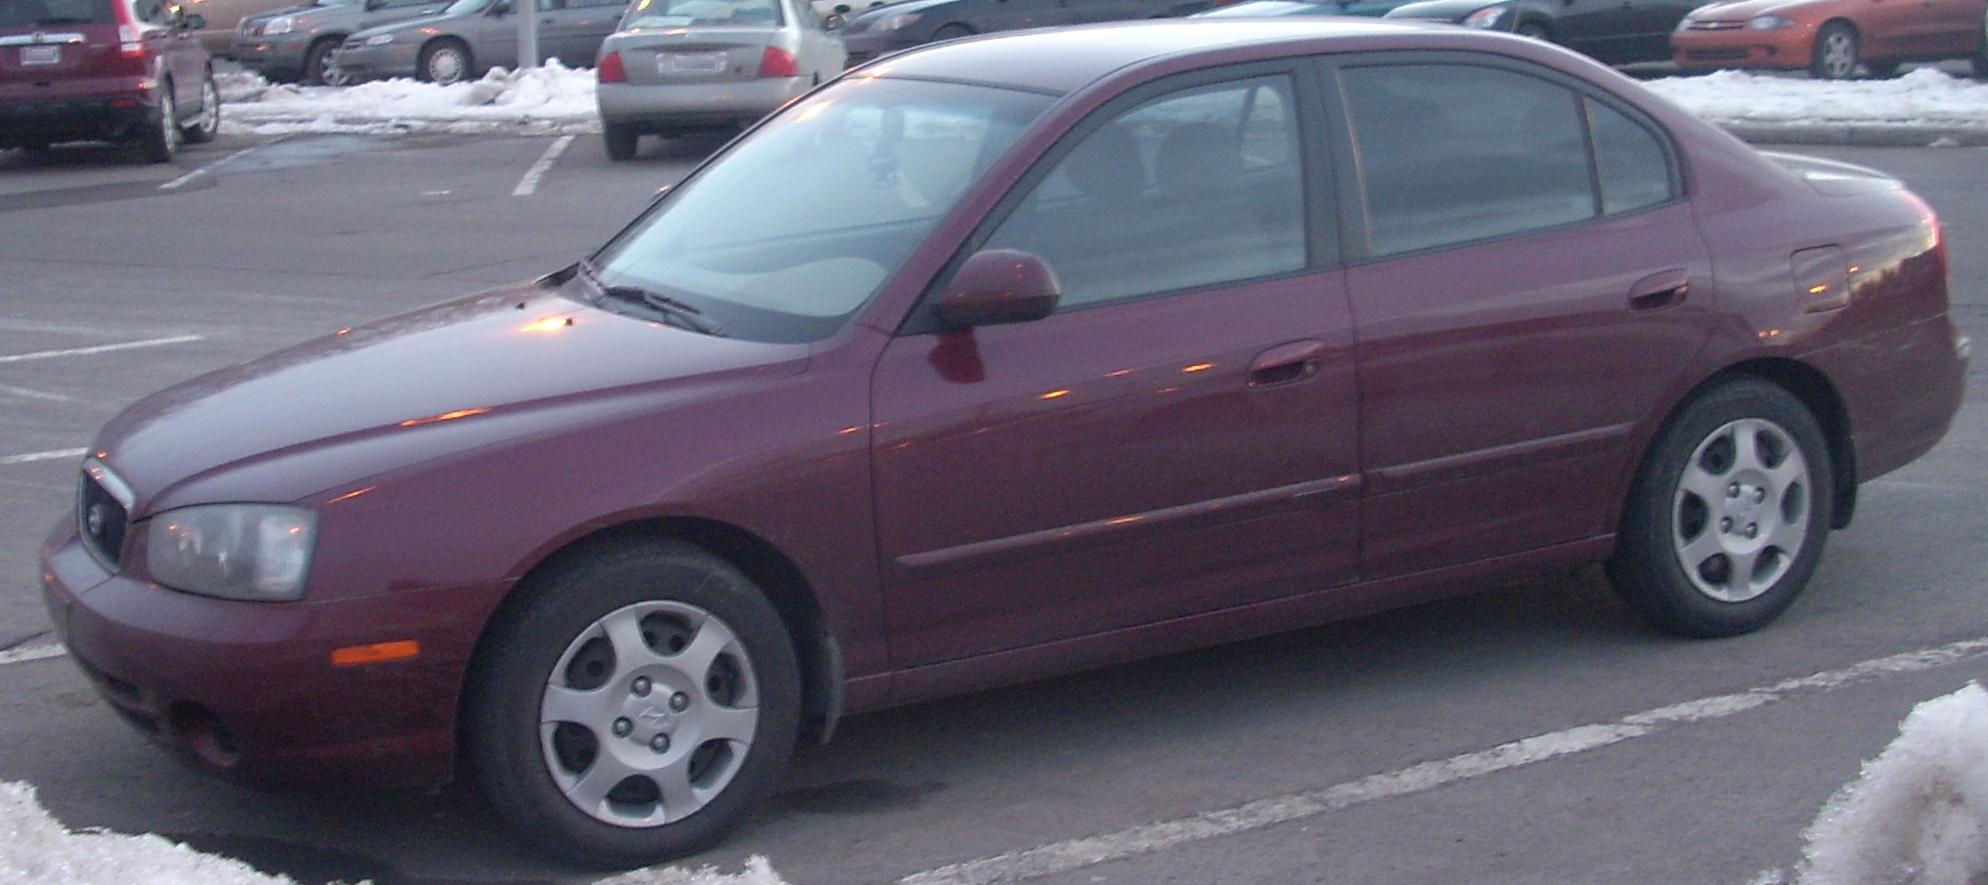 File:2001-'03 Hyundai Elantra Sedan.JPG - Wikimedia Commons